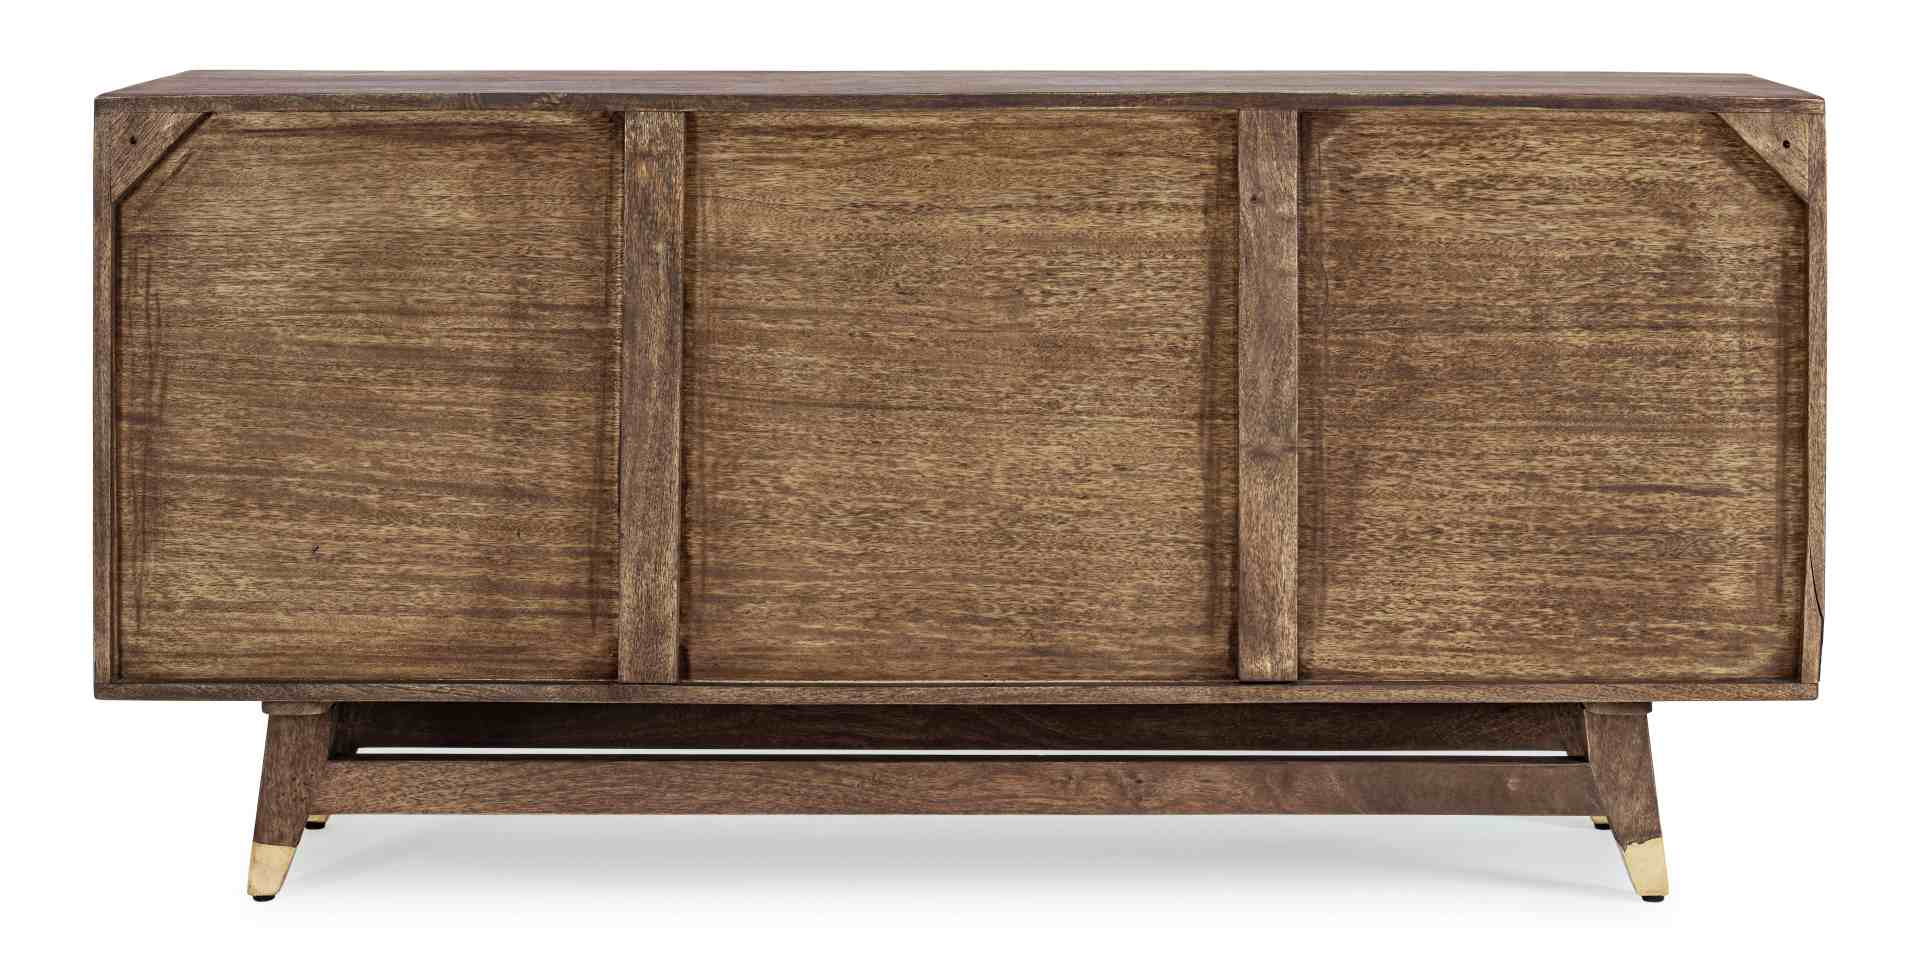 Das Sideboard Dhaval überzeugt mit seinem klassischen Design. Gefertigt wurde es aus Mango-Holz, welches einen natürlichen Farbton besitzt. Das Gestell ist auch aus Mango-Holz. Das Sideboard verfügt über zwei Türen und elf Schubladen. Die Breite beträgt 1